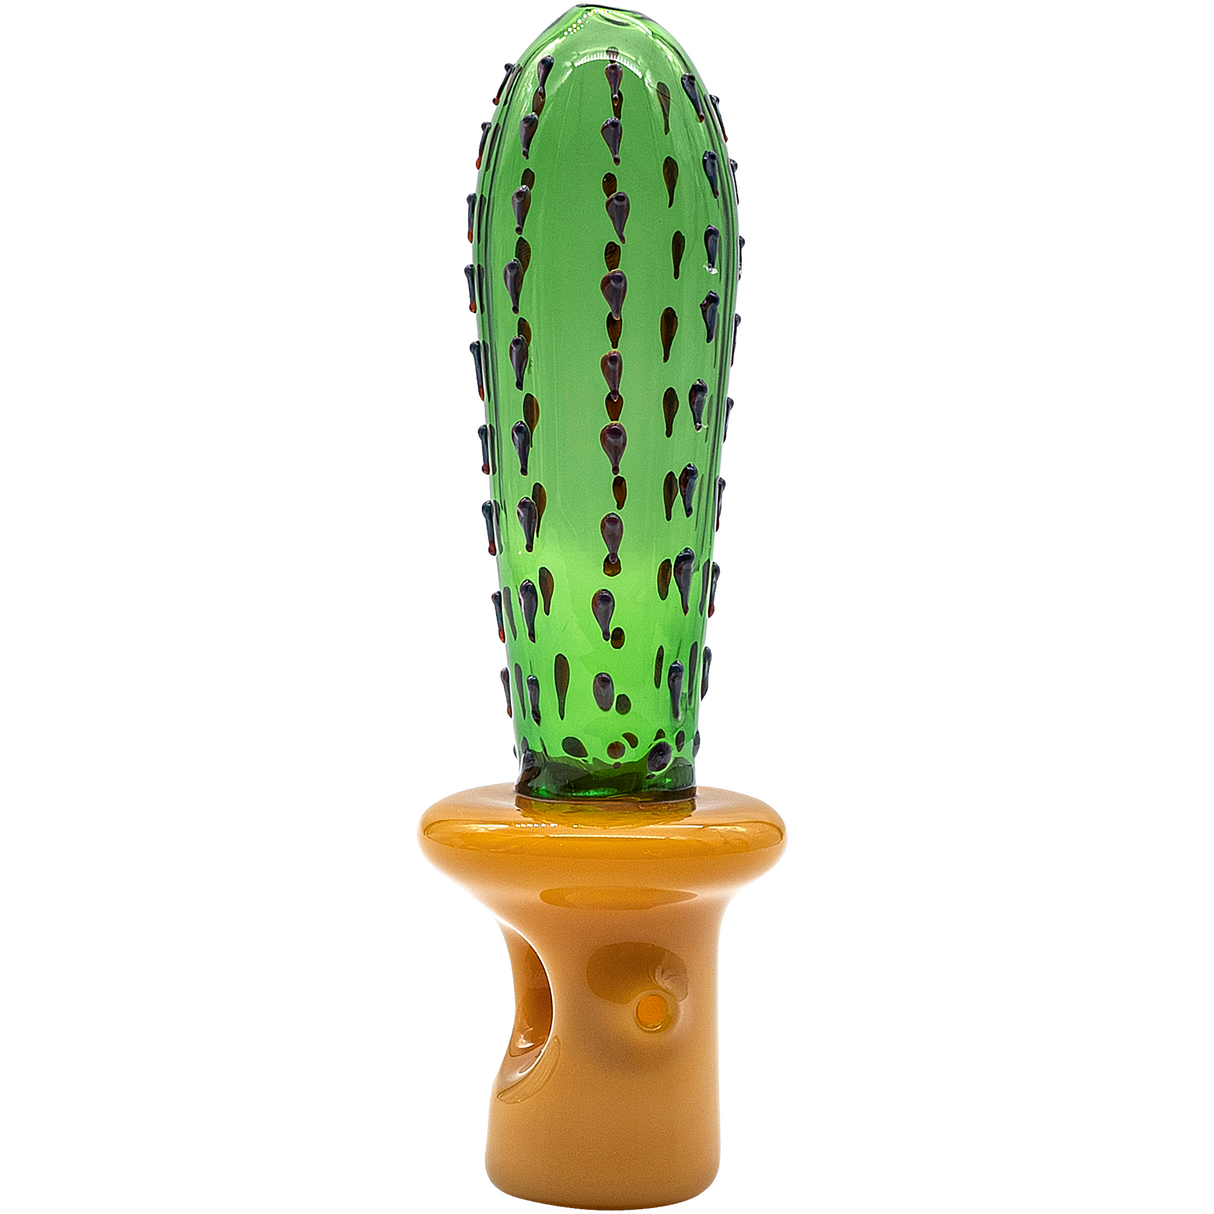 LA Pipes San Pedro Cactus Glass Pipe, 5" Spoon Design, Green Borosilicate, Front View